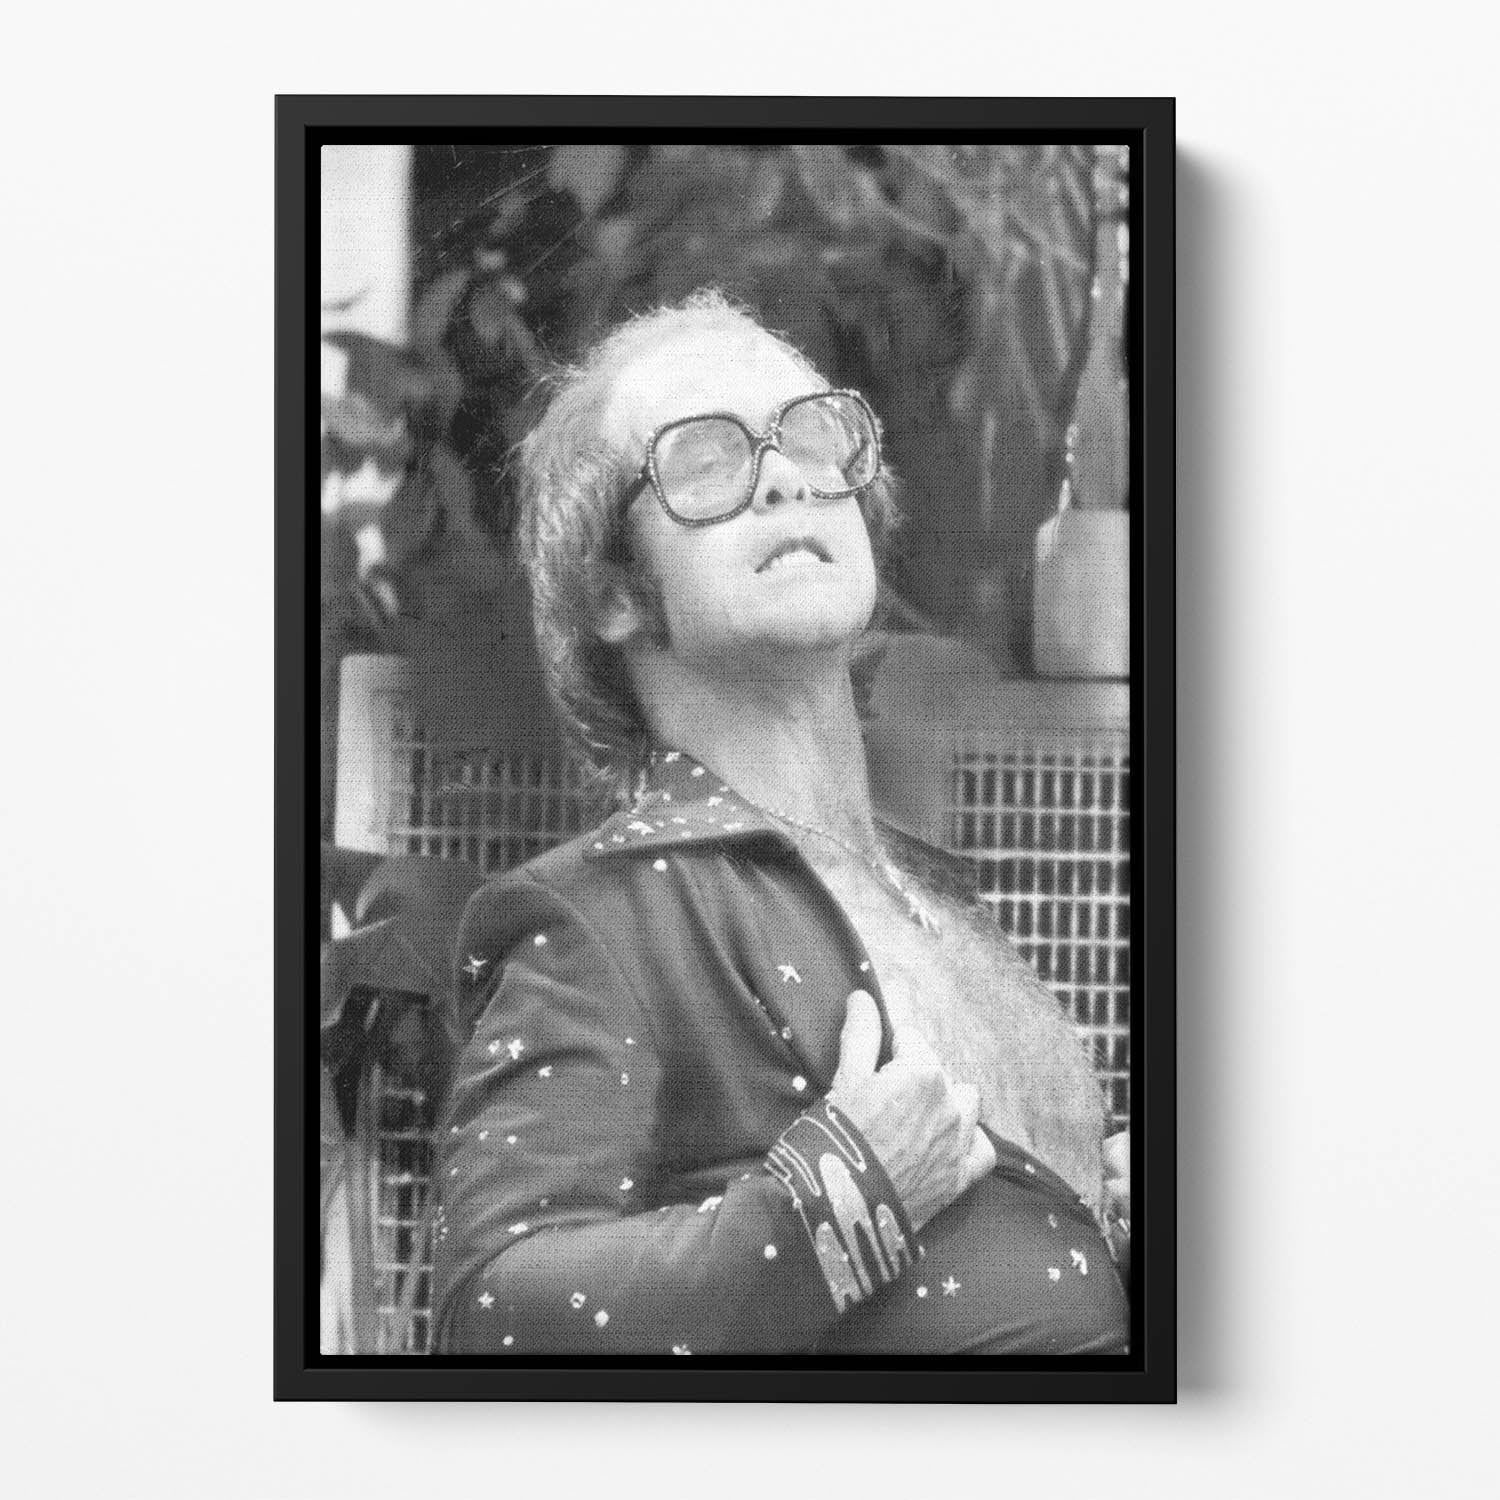 Elton John onstage 1975 Floating Framed Canvas